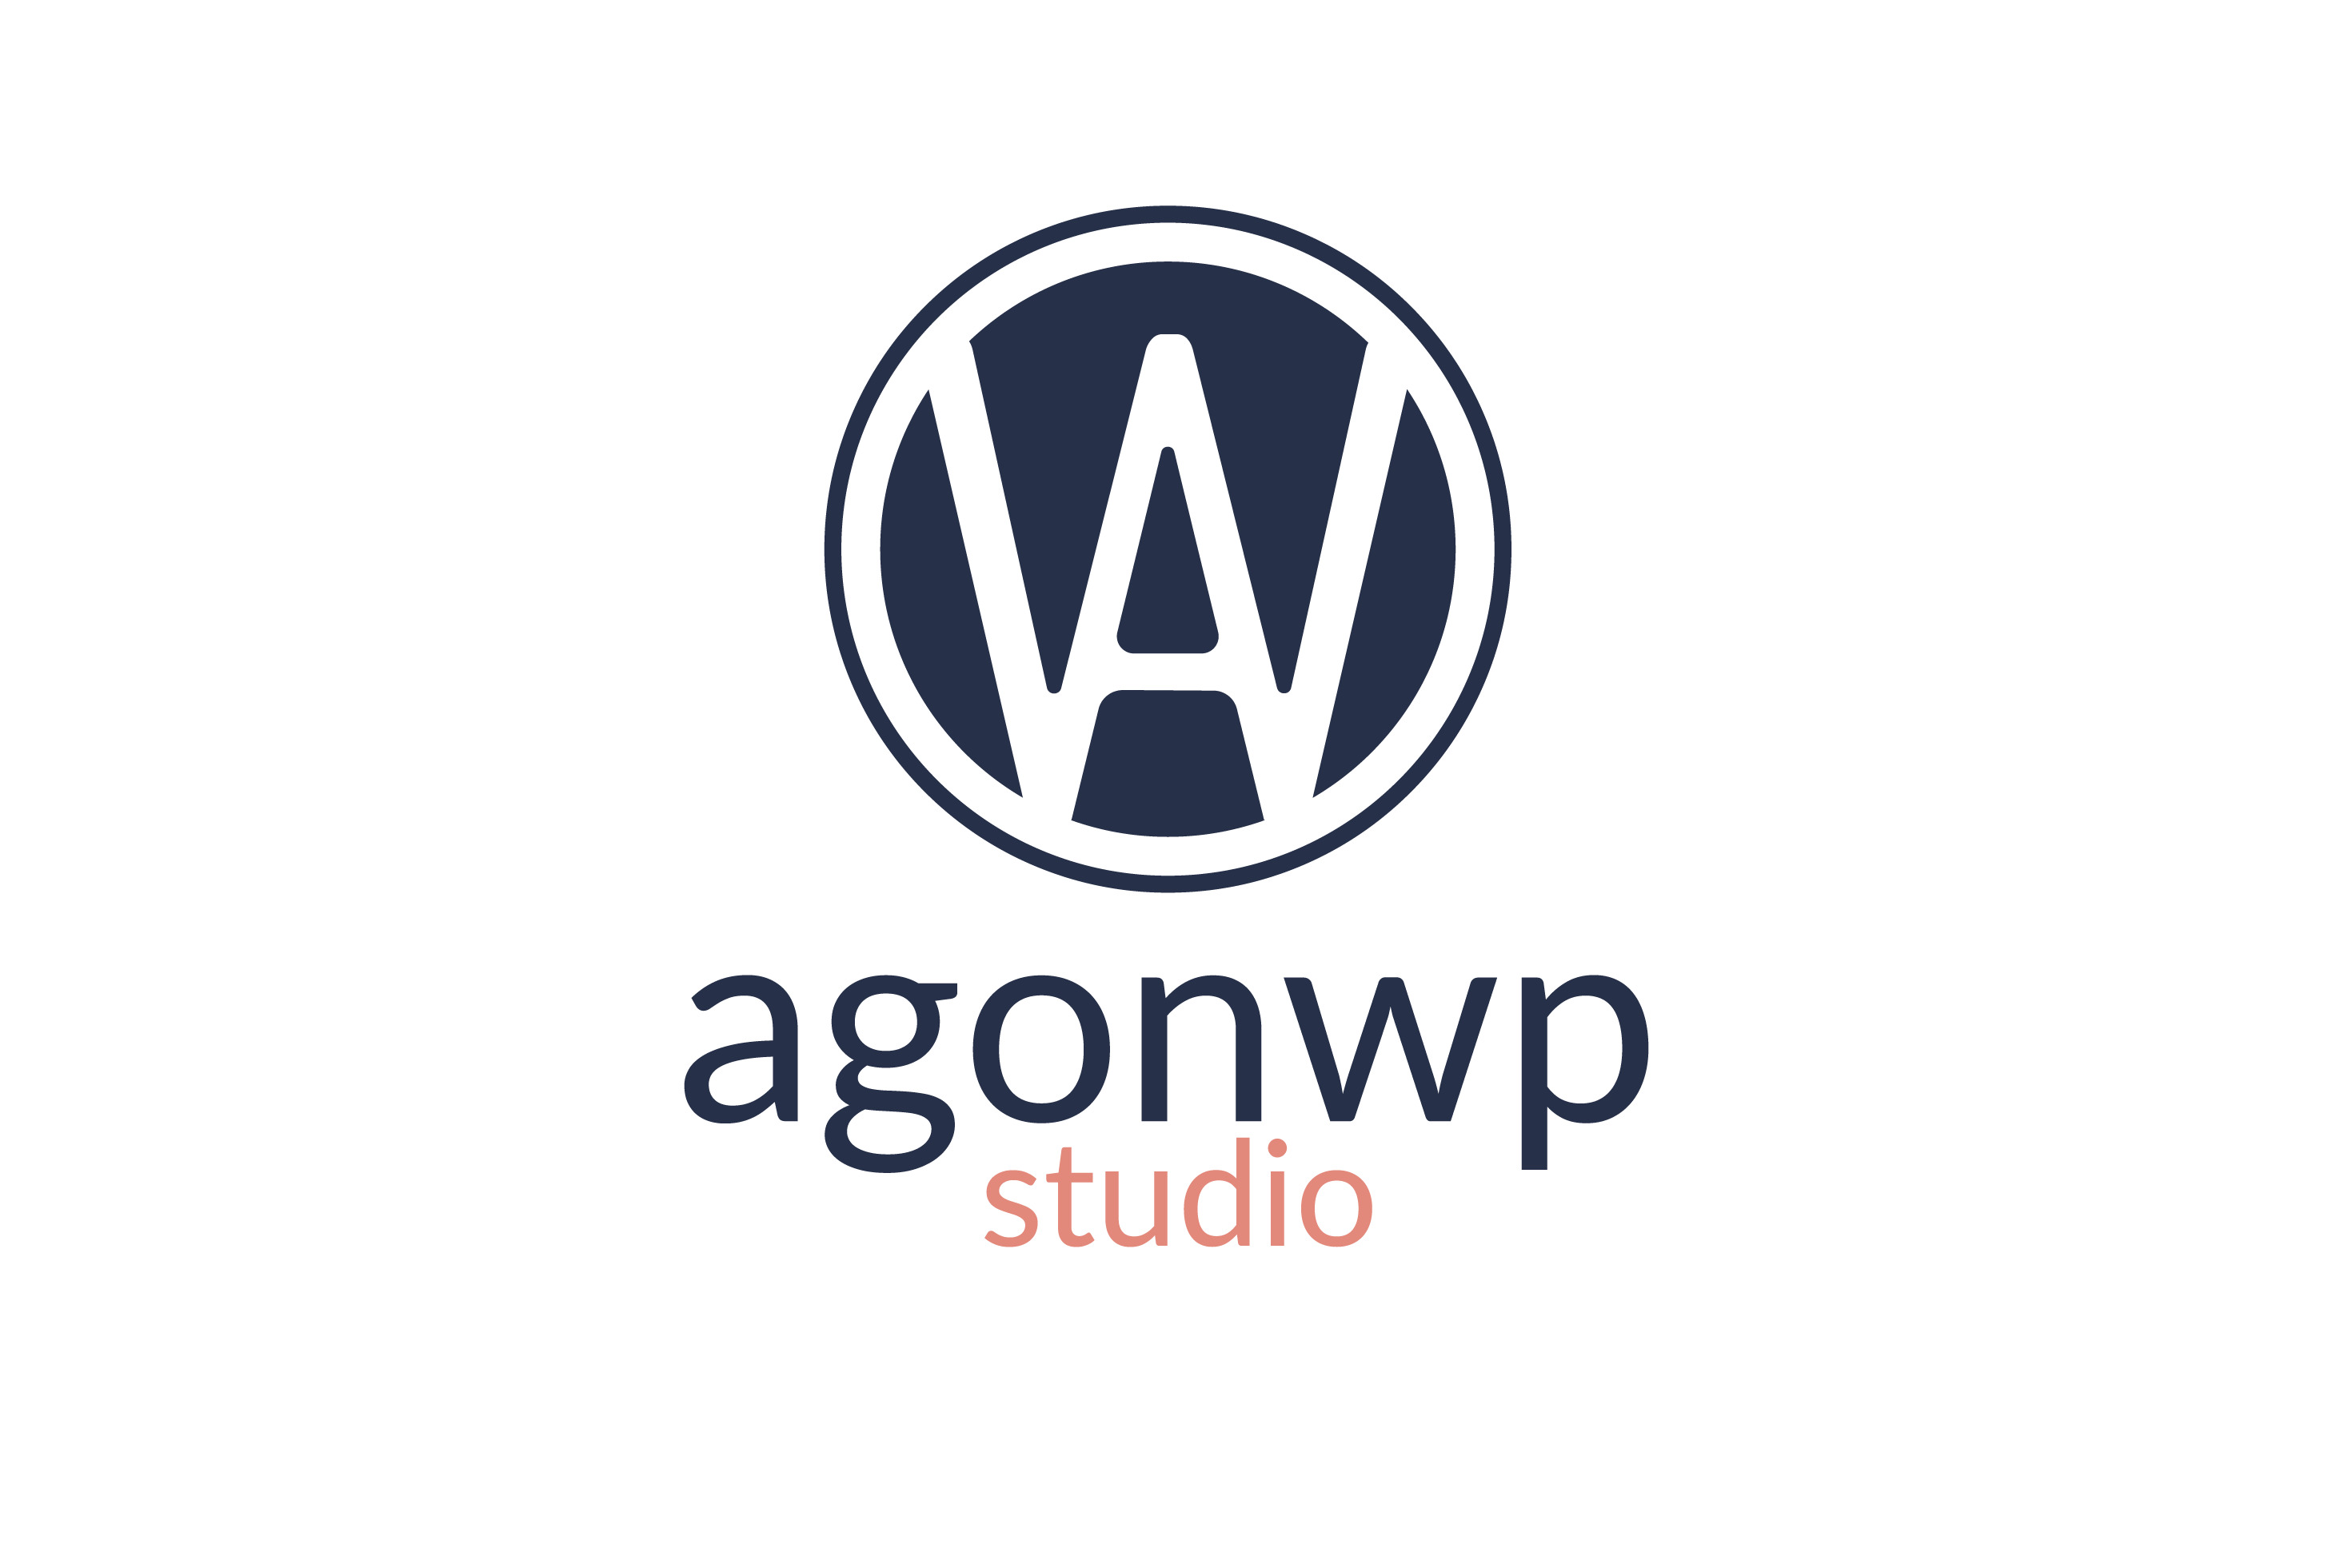 Agonwp studio's Logo